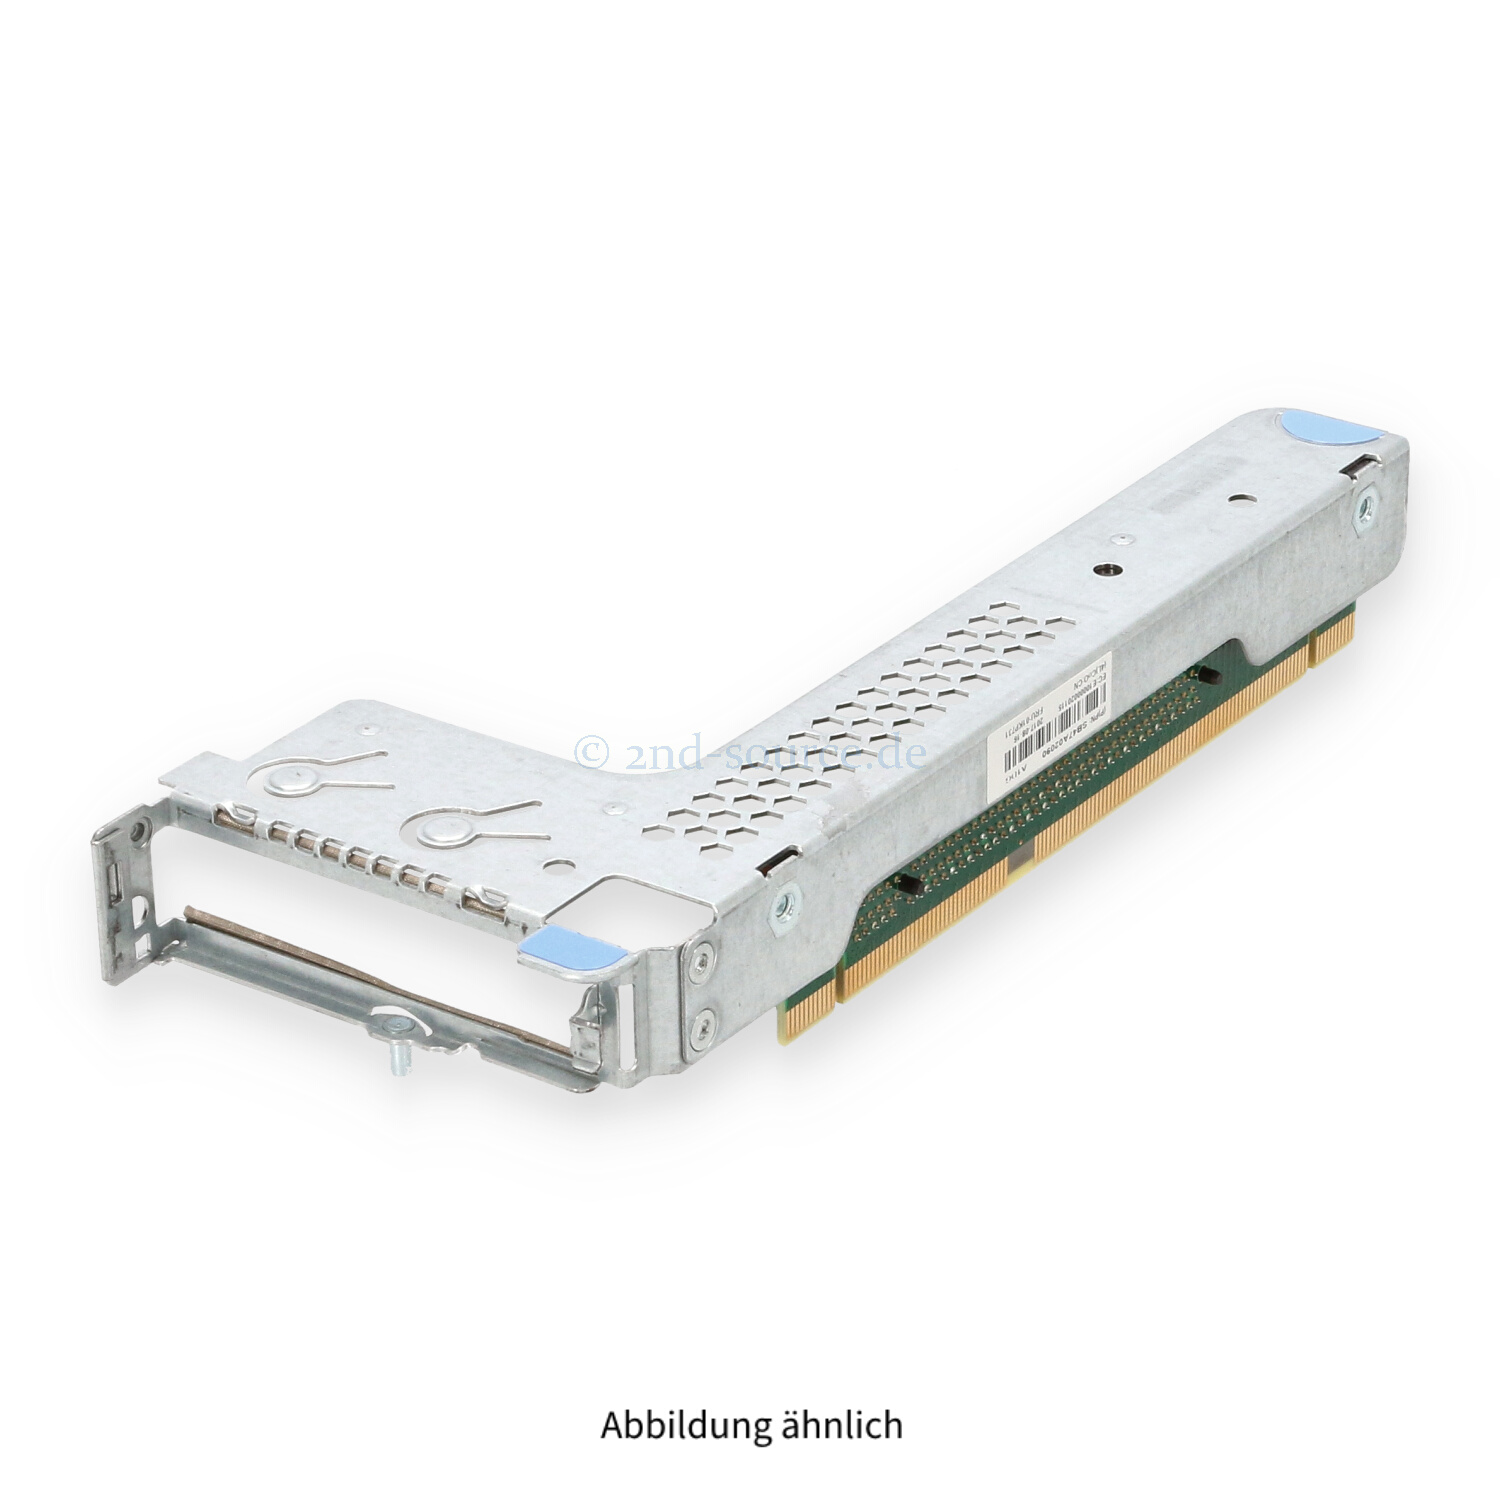 Lenovo PCIe x16/x8 LP Riser 2 Kit SR530 SR570 SR630 7XH7A02685 01GV301